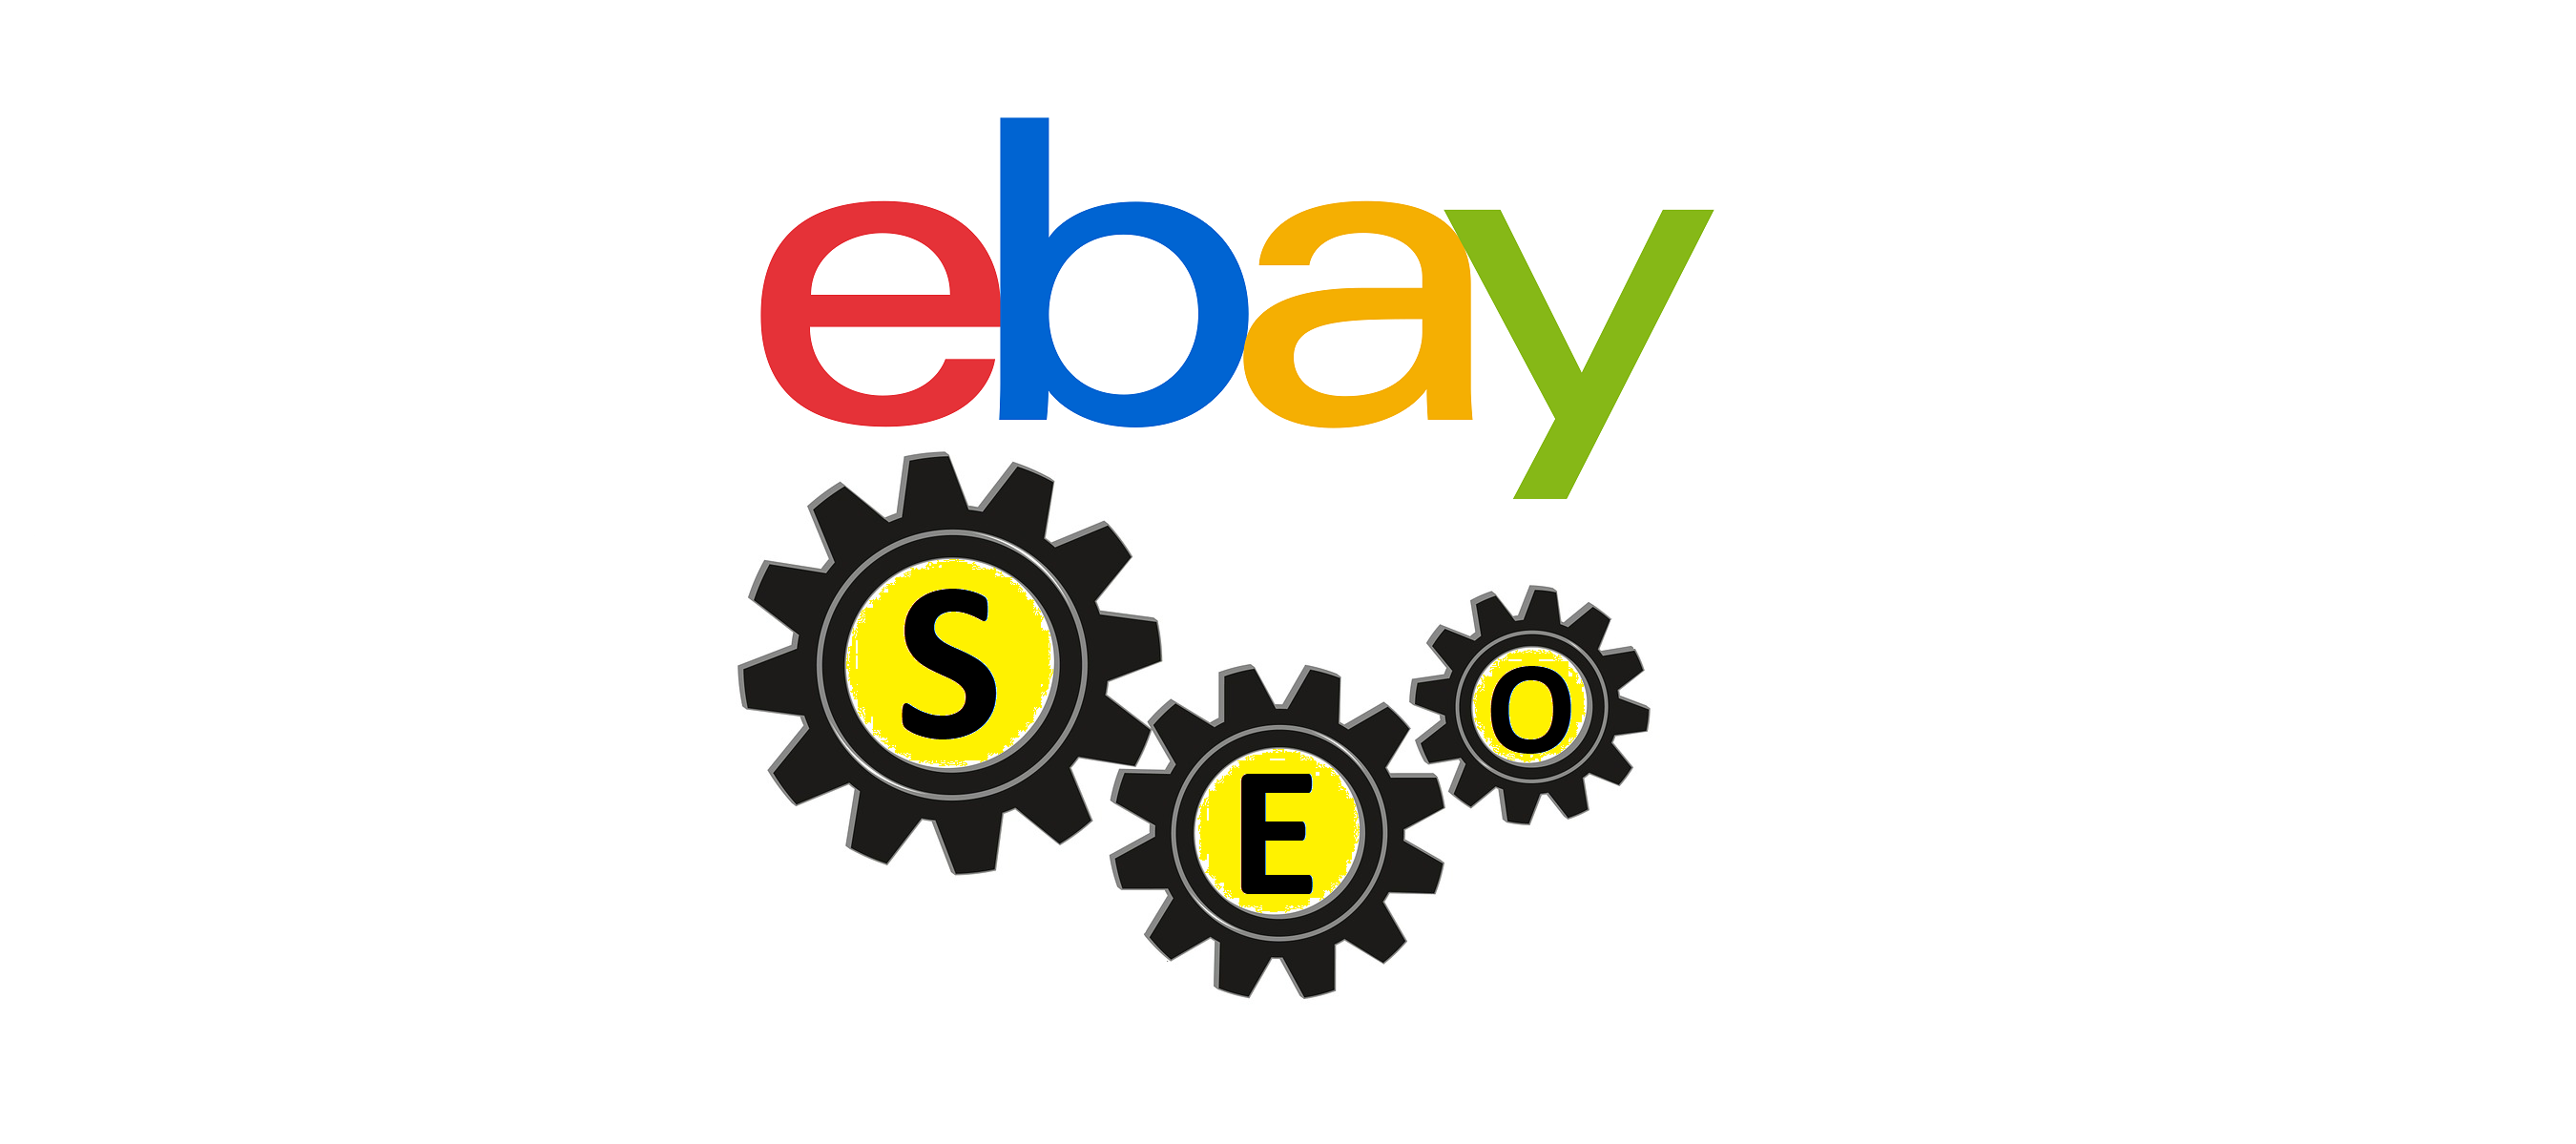 As 5 dicas de SEO mais importantes para o eBay